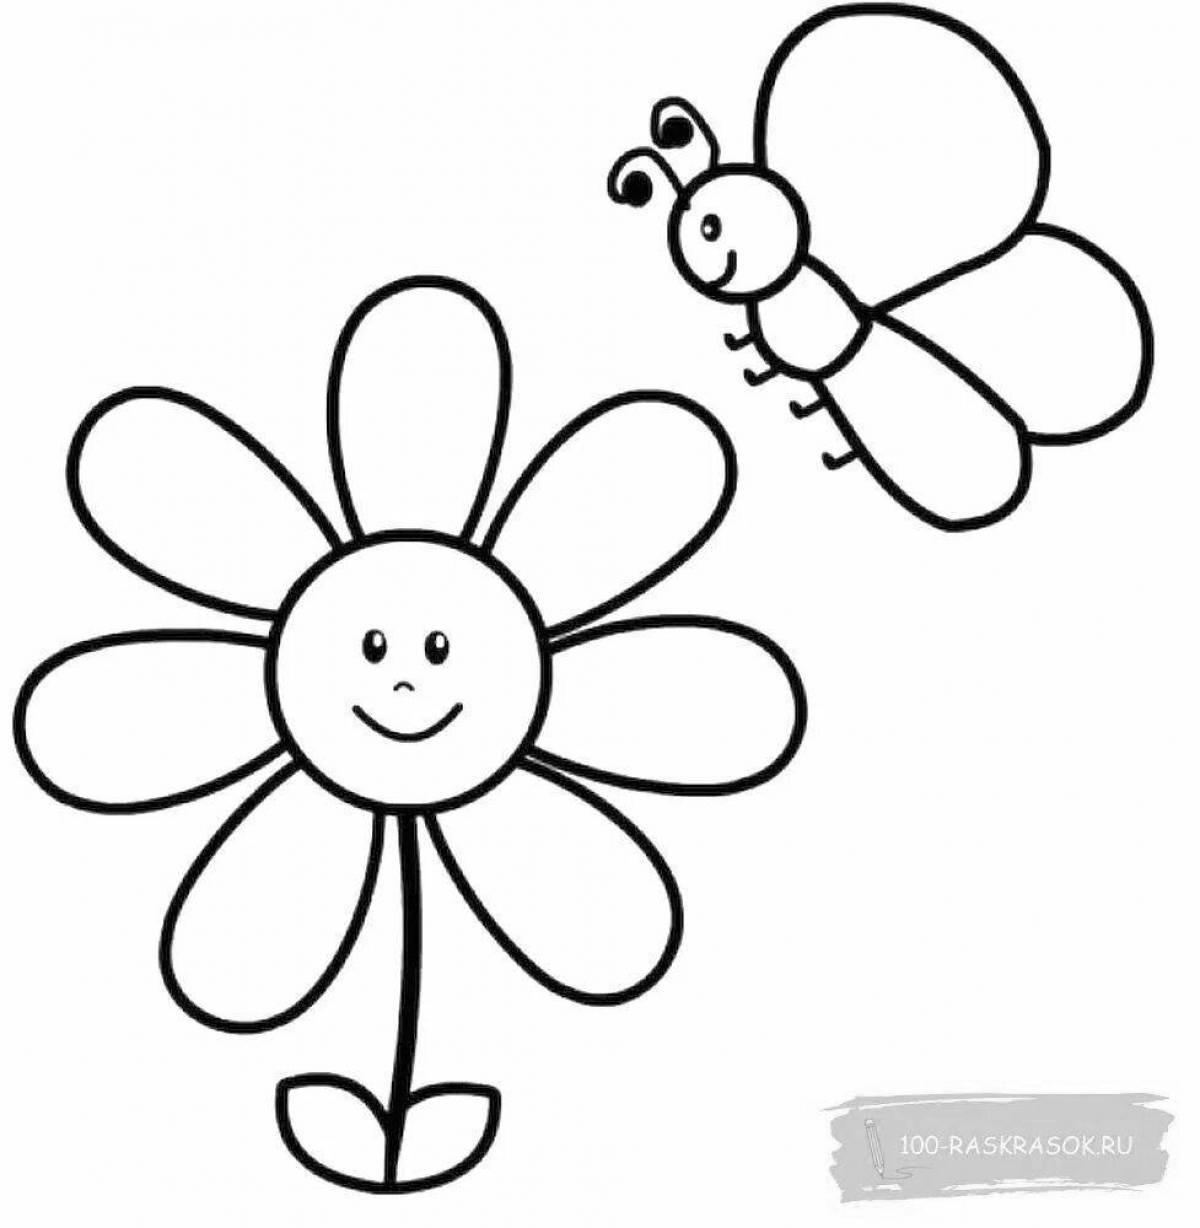 Сладкая раскраска цветок для детей 2-3 лет